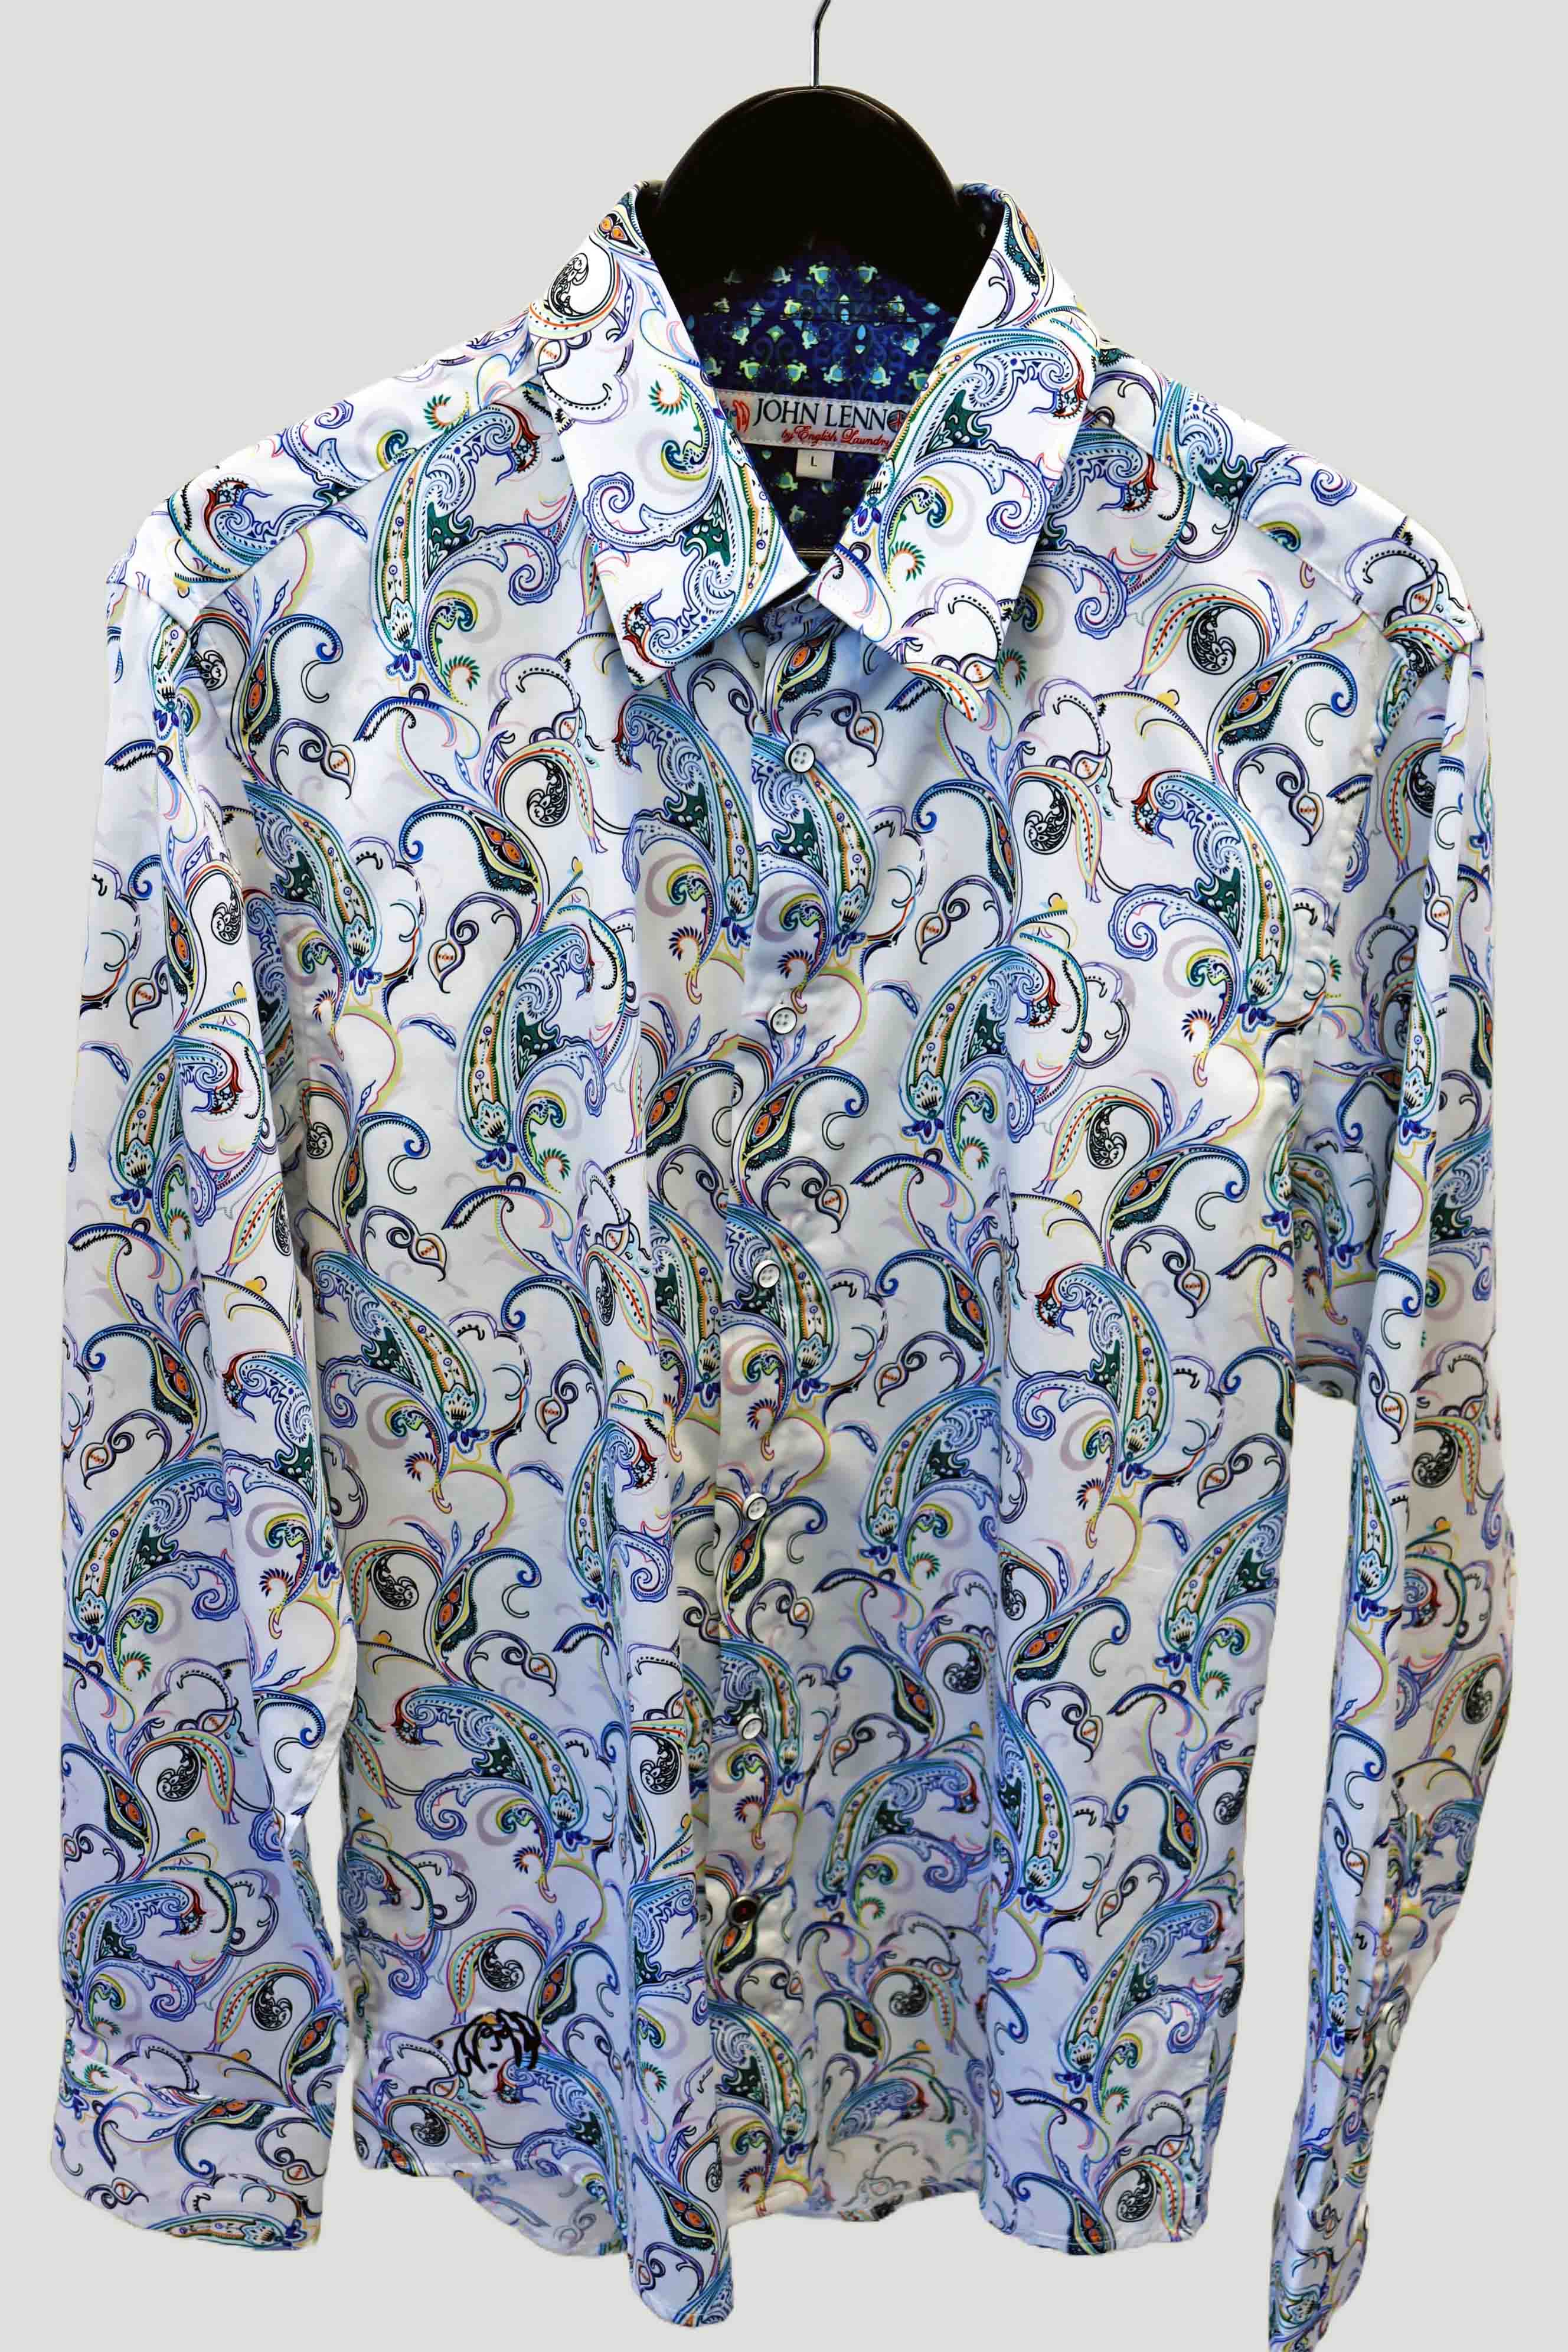 John Lennon L/S Shirt | Multi Paisley